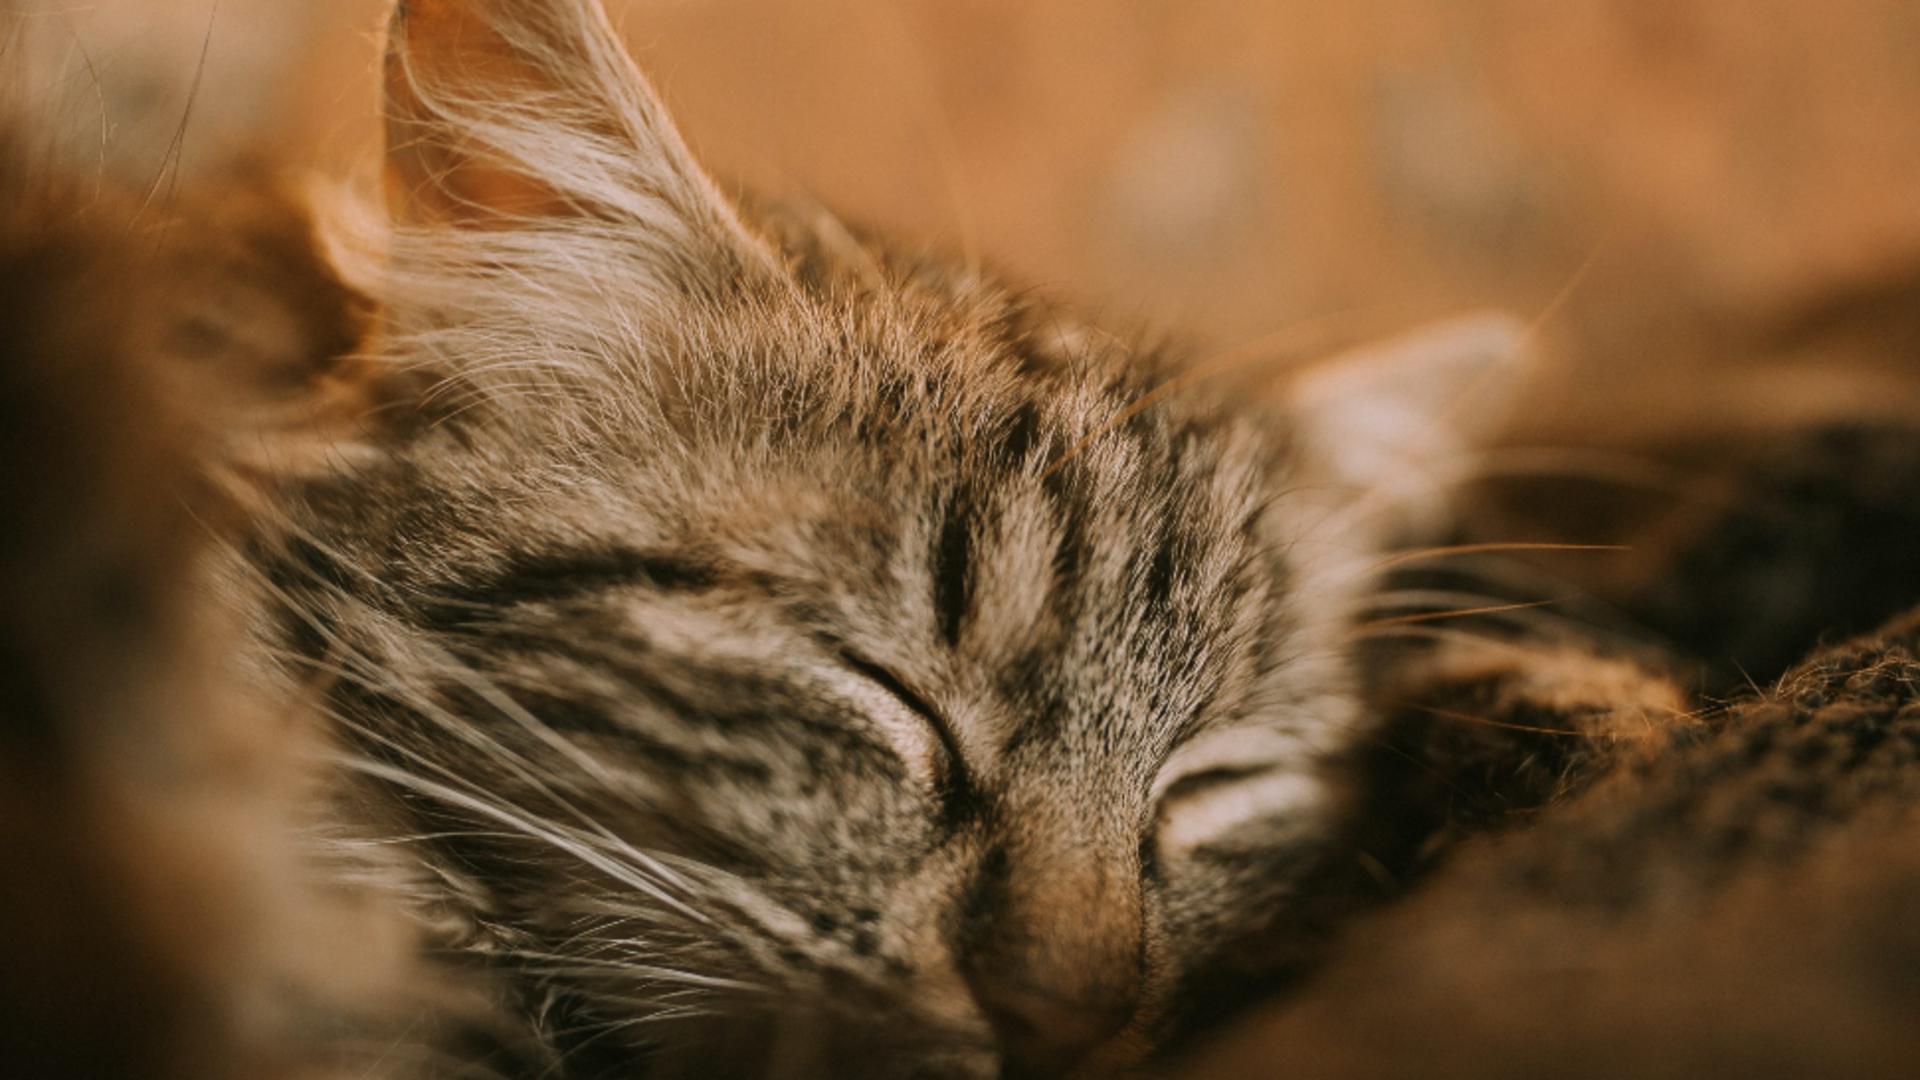 Pisica, terapeutul blănos - Torsul și efectele lui miraculoase asupra oamenilor